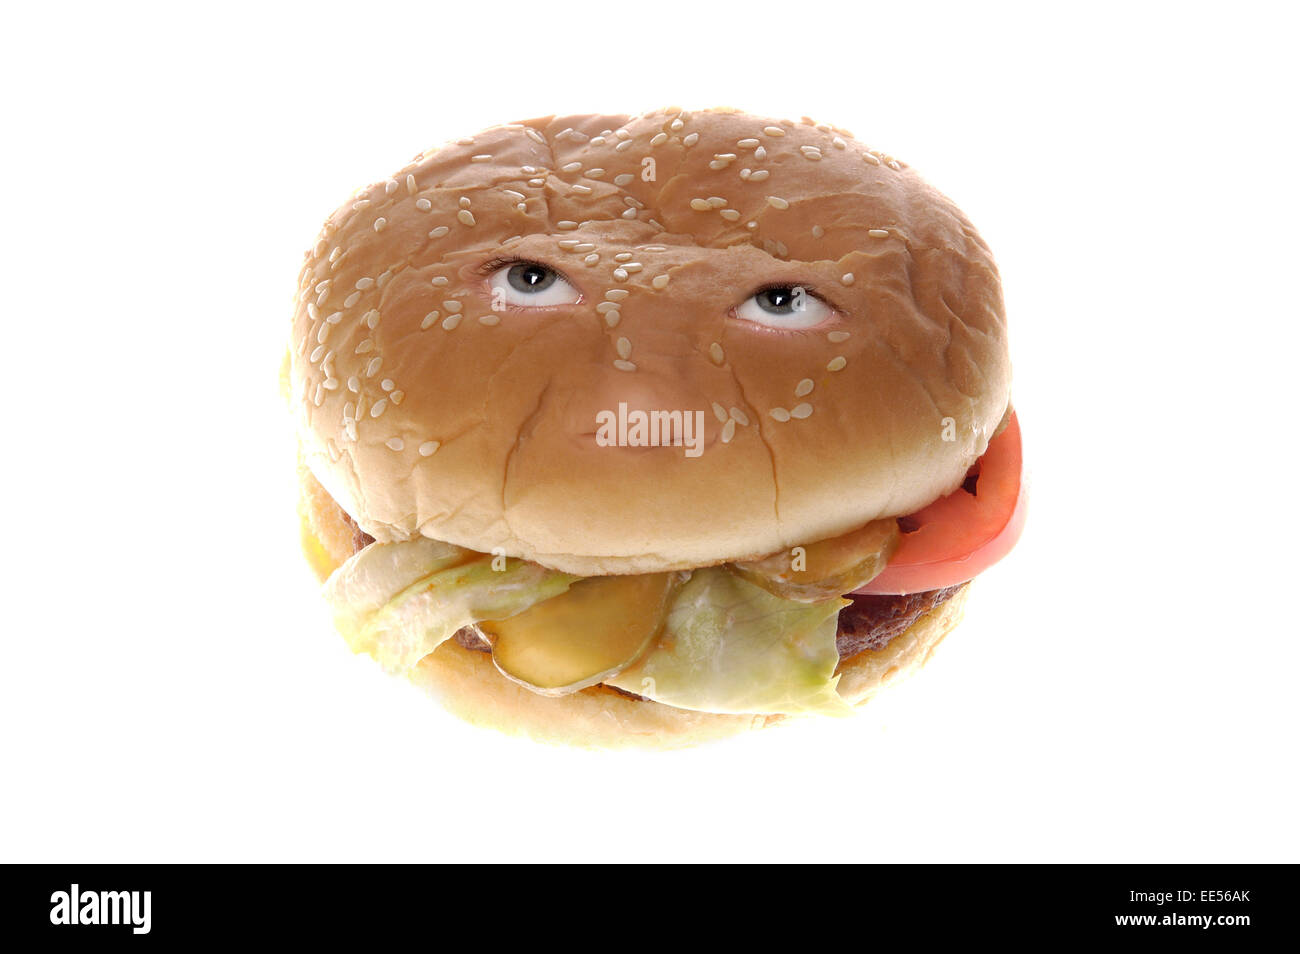 A hamburger with a human face, or hamburger head Stock Photo